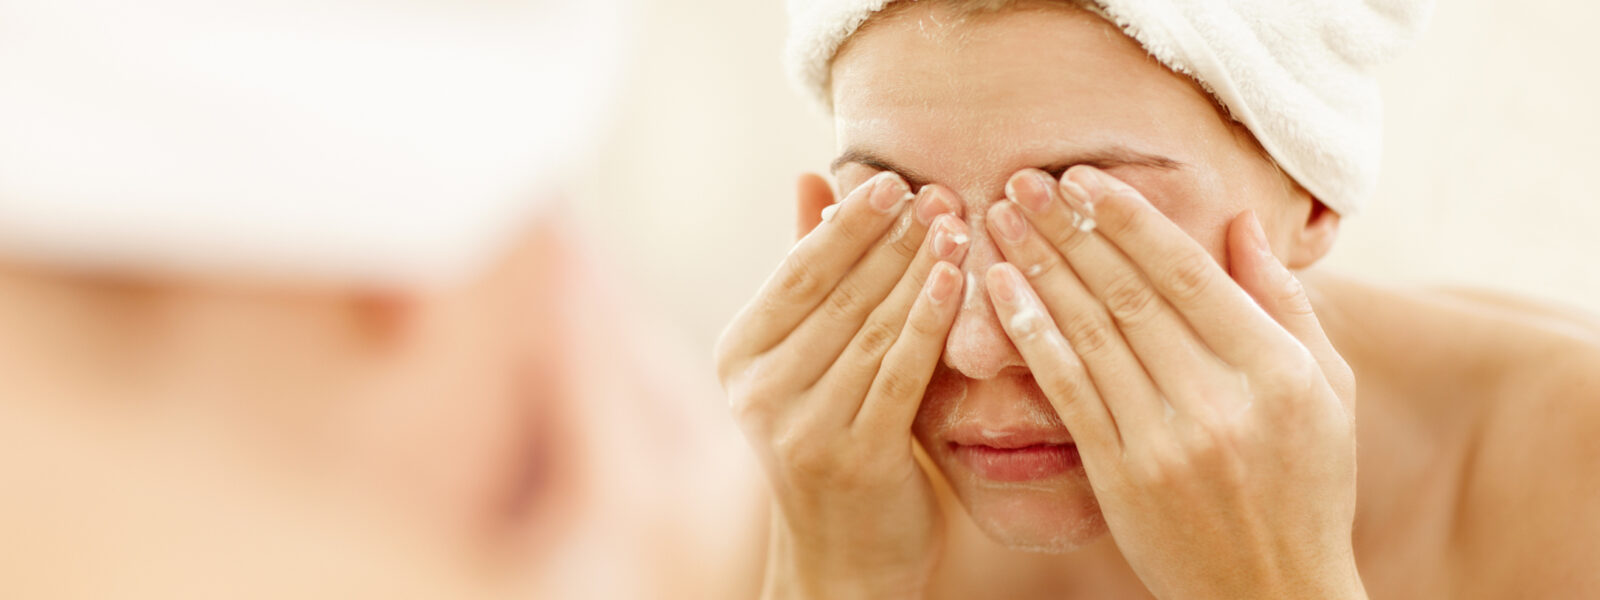 Sete hábitos que põem em risco a saúde ocular